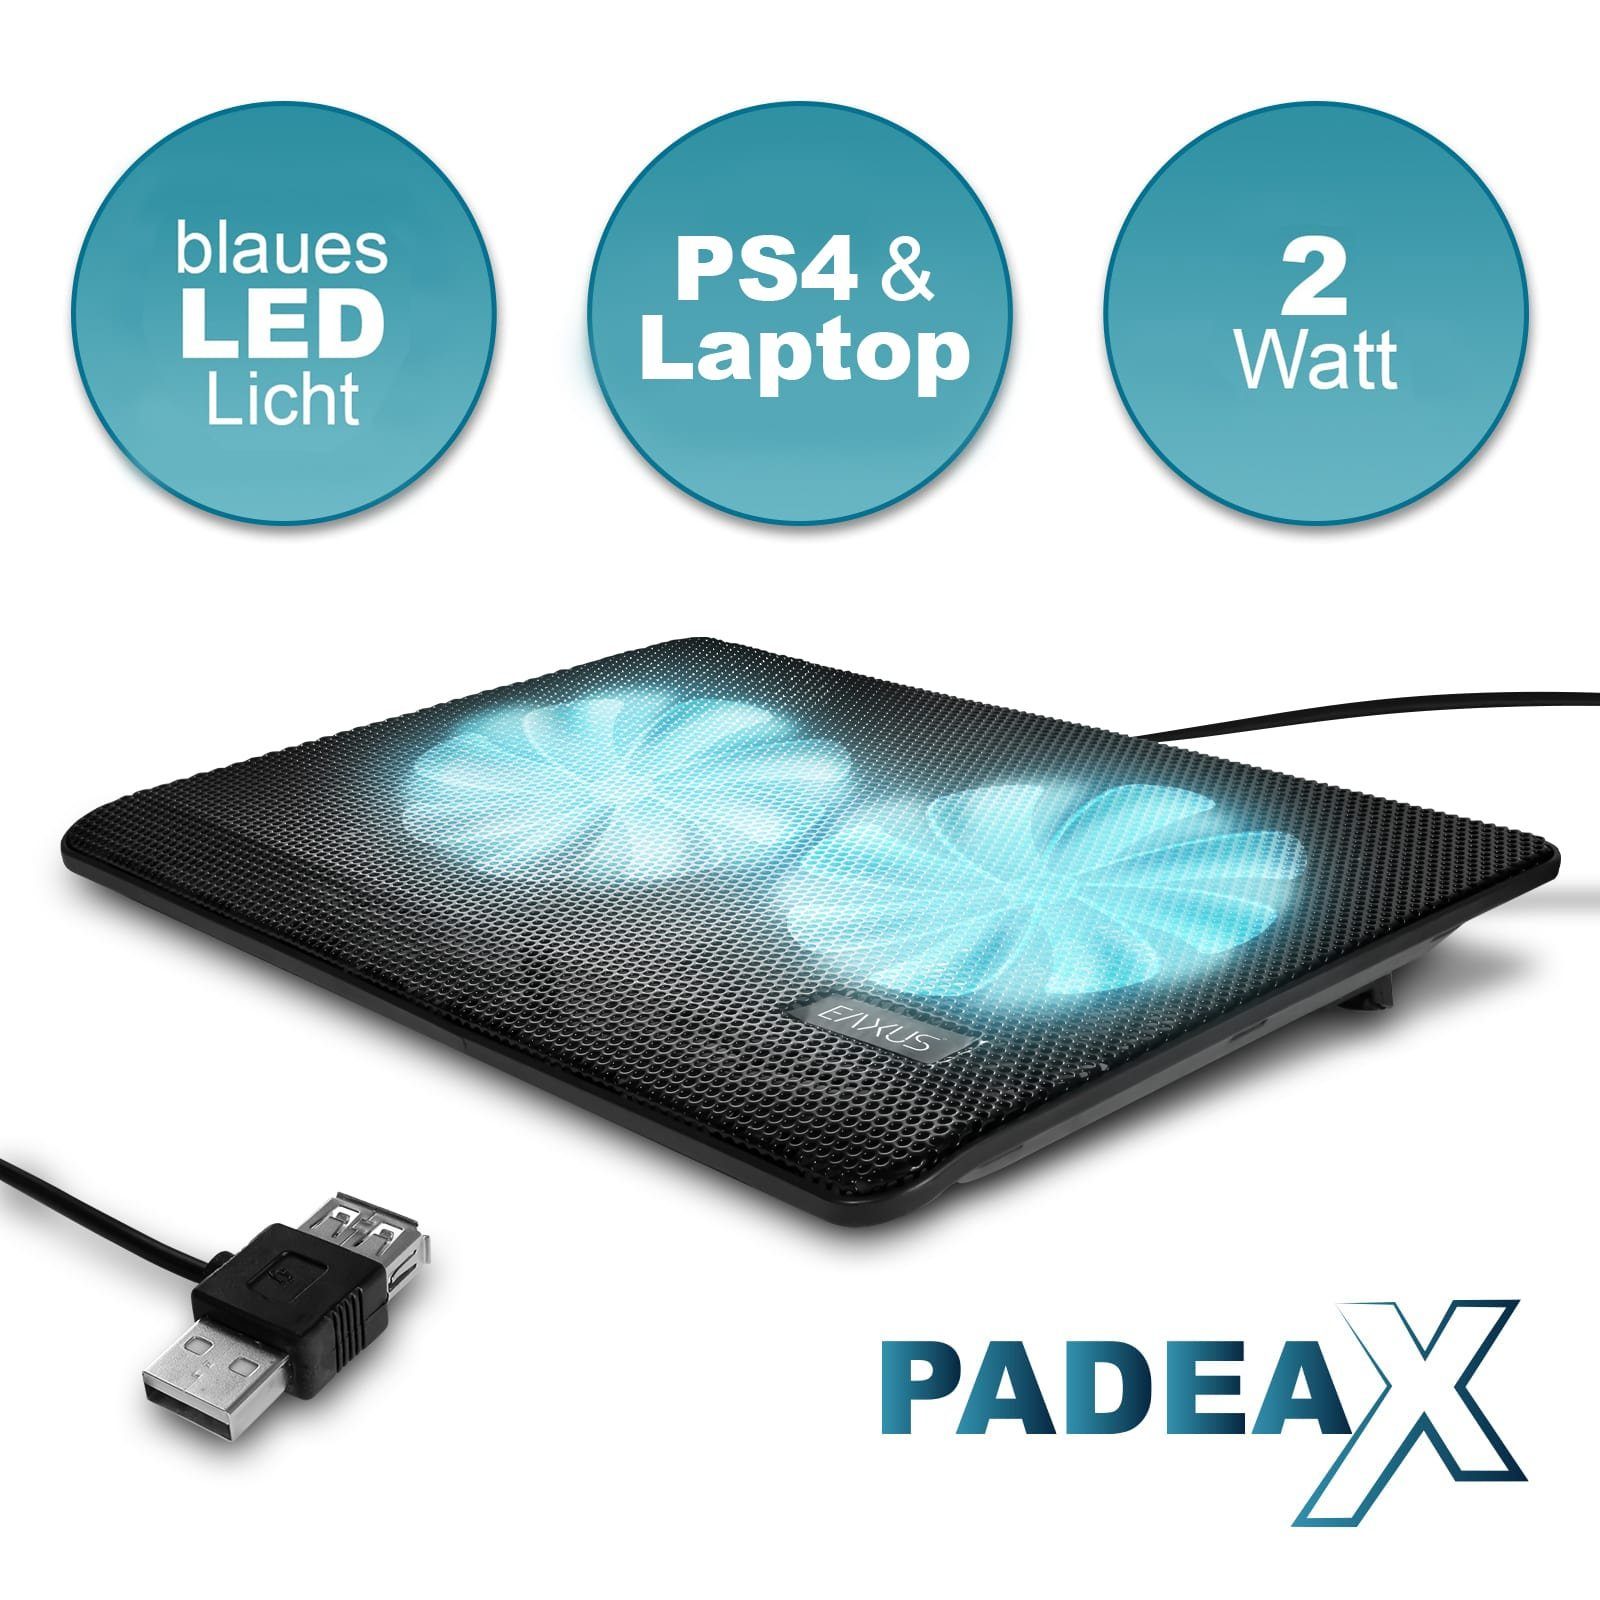 blauer Laptops LED-Beleuchtung EAXUS PlayStation Konsolen. mit Kühler, Notebook-Kühler auch Lüfter 4, für PS5, & Padeax weitere